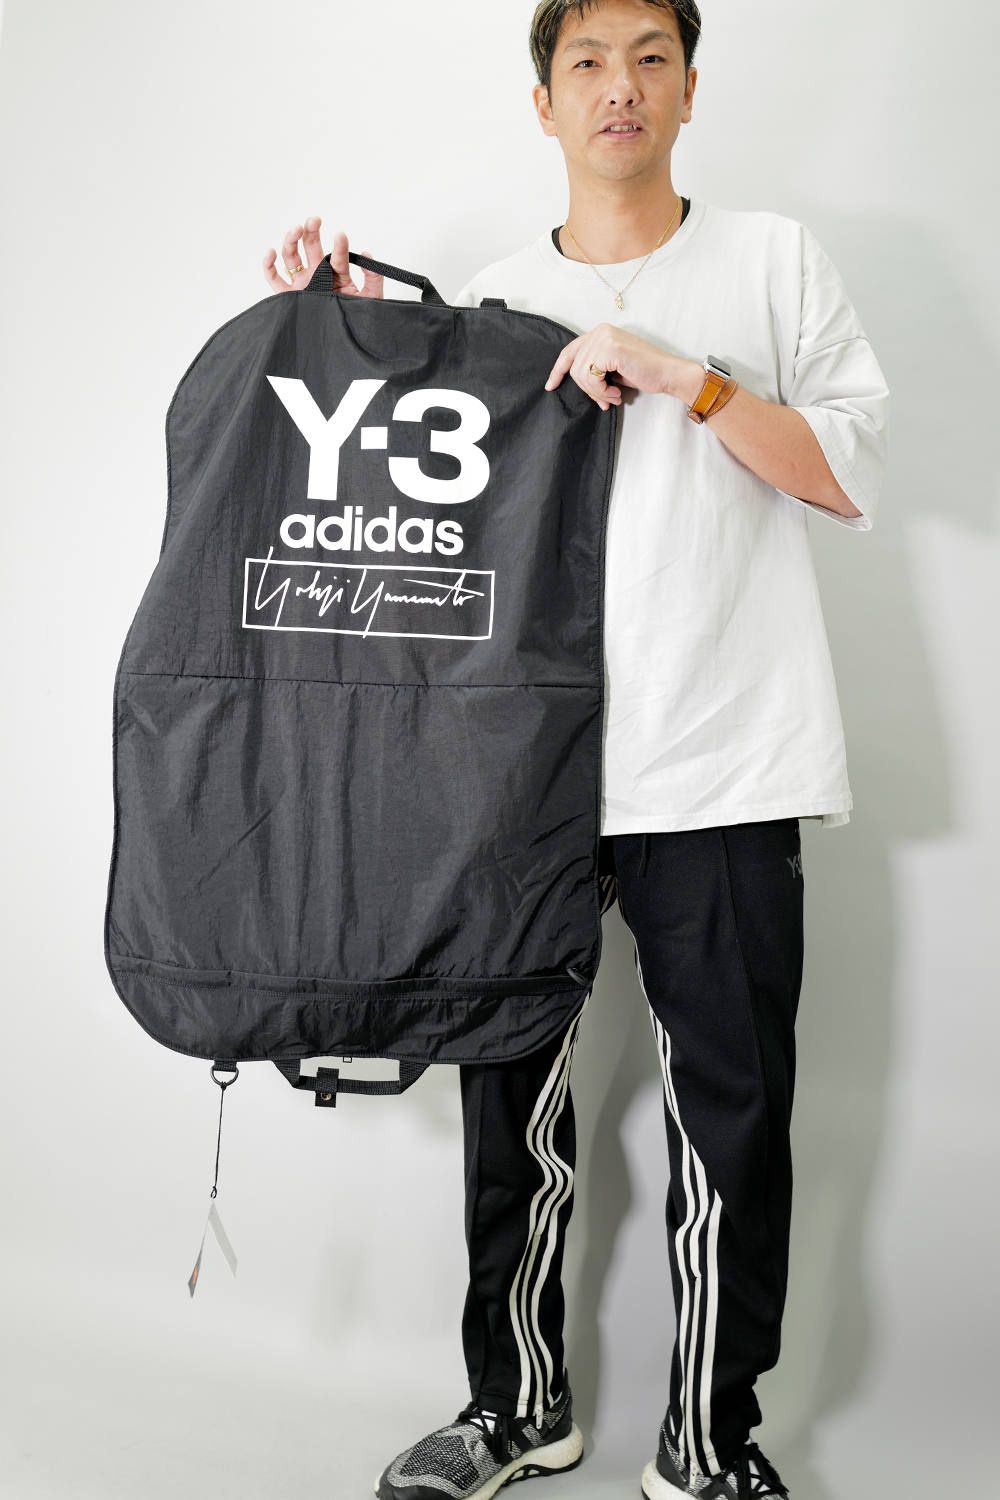 Y-3 adidas スーツバッグ-